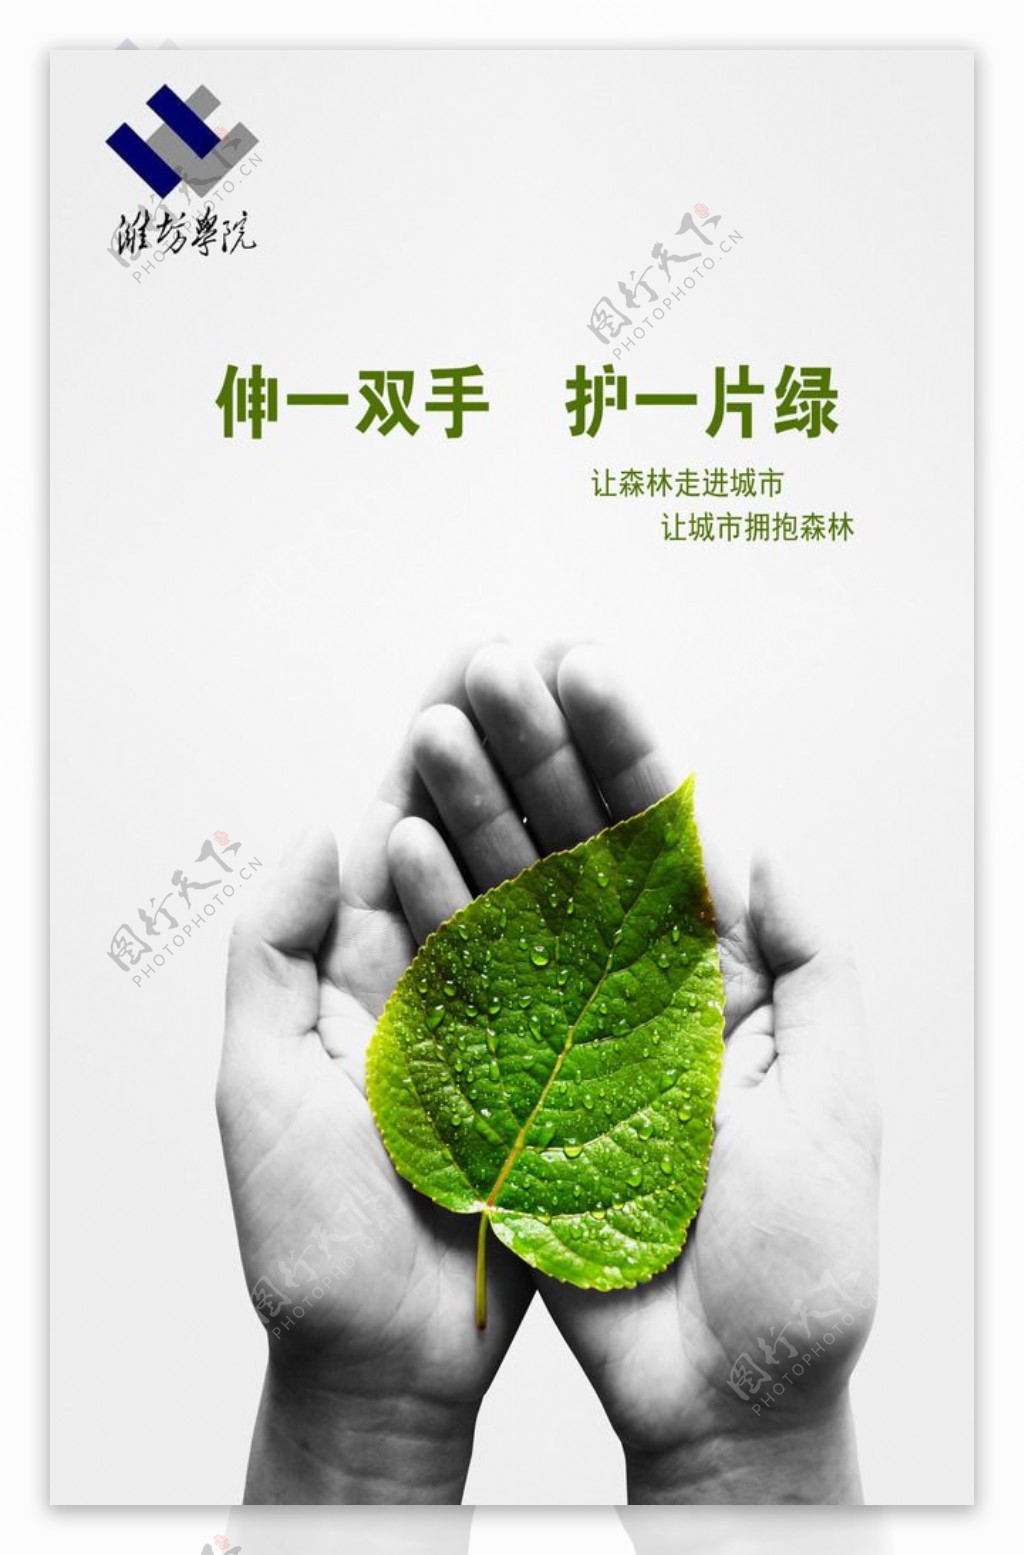 保护环境公益广告设计图片